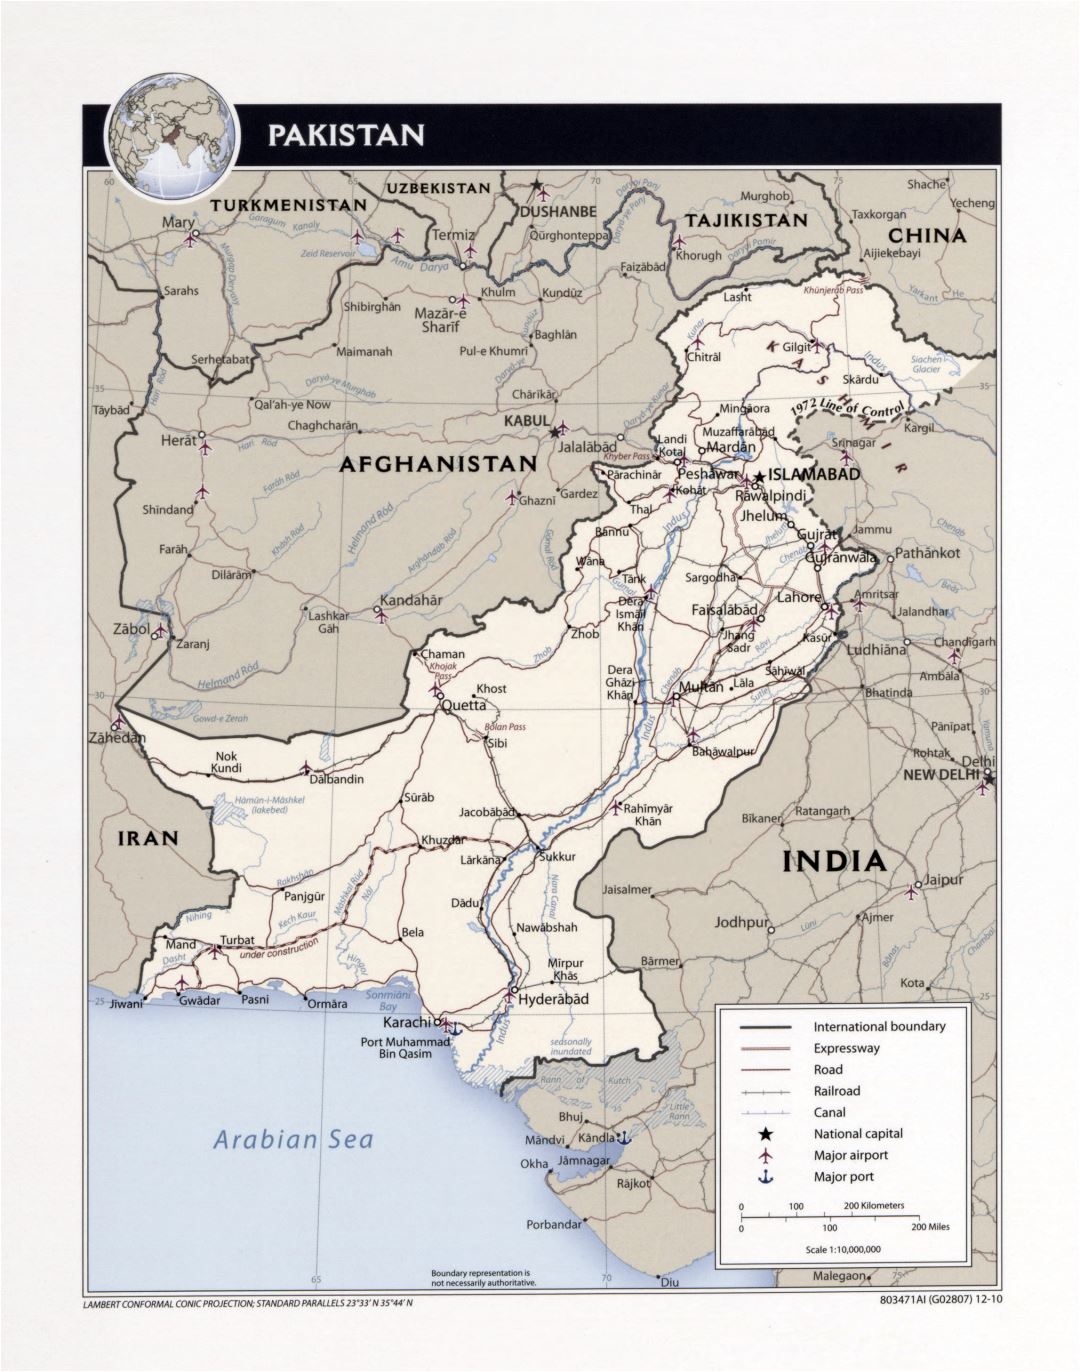 Grande detallado mapa político de Pakistán con carreteras, ferrocarriles, ciudades, aeropuertos, puertos y otras marcas - 2010